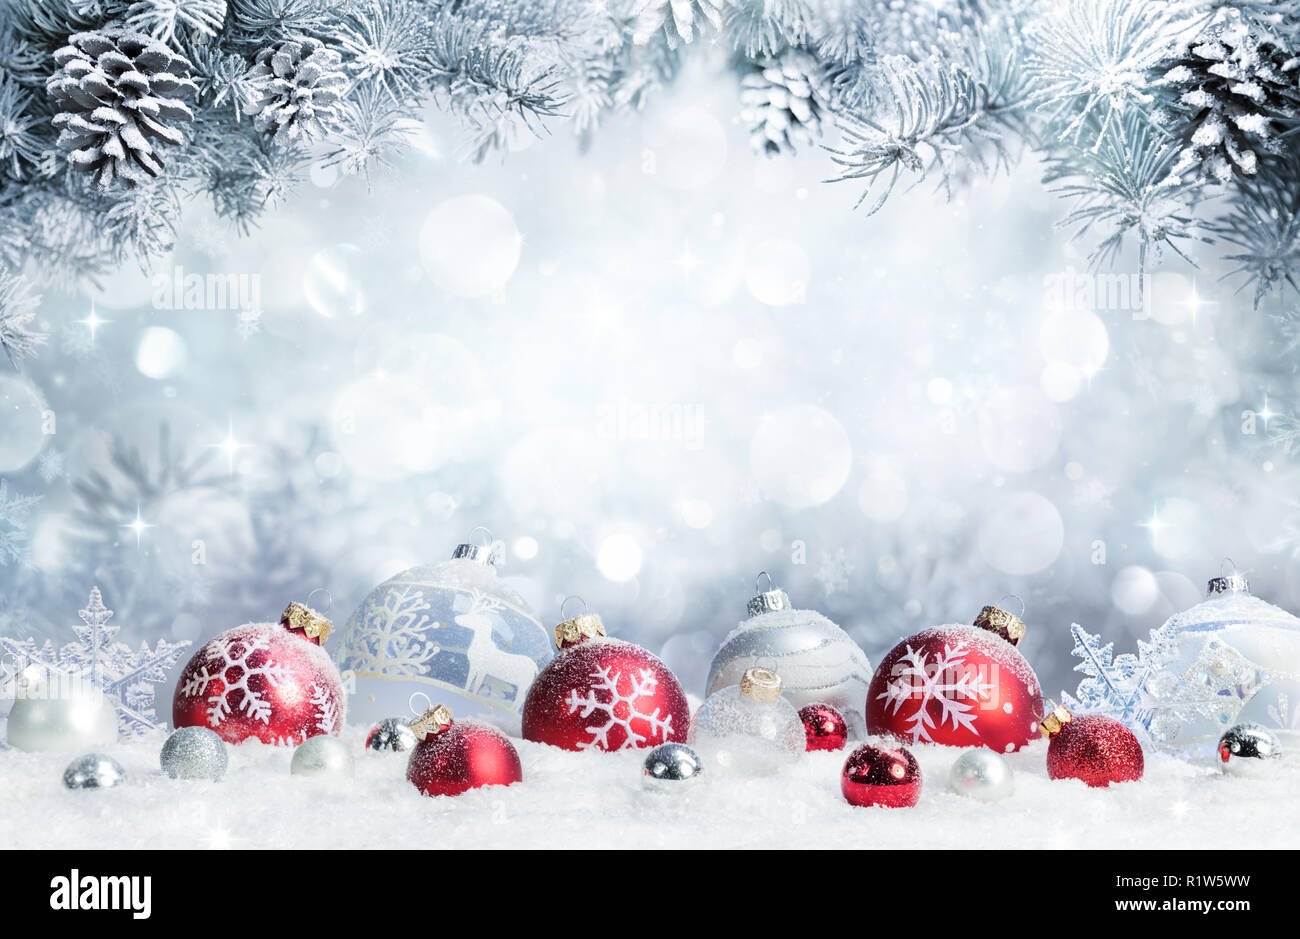 Feliz Navidad - Bolas de Nieve con ramas de abeto Foto de stock